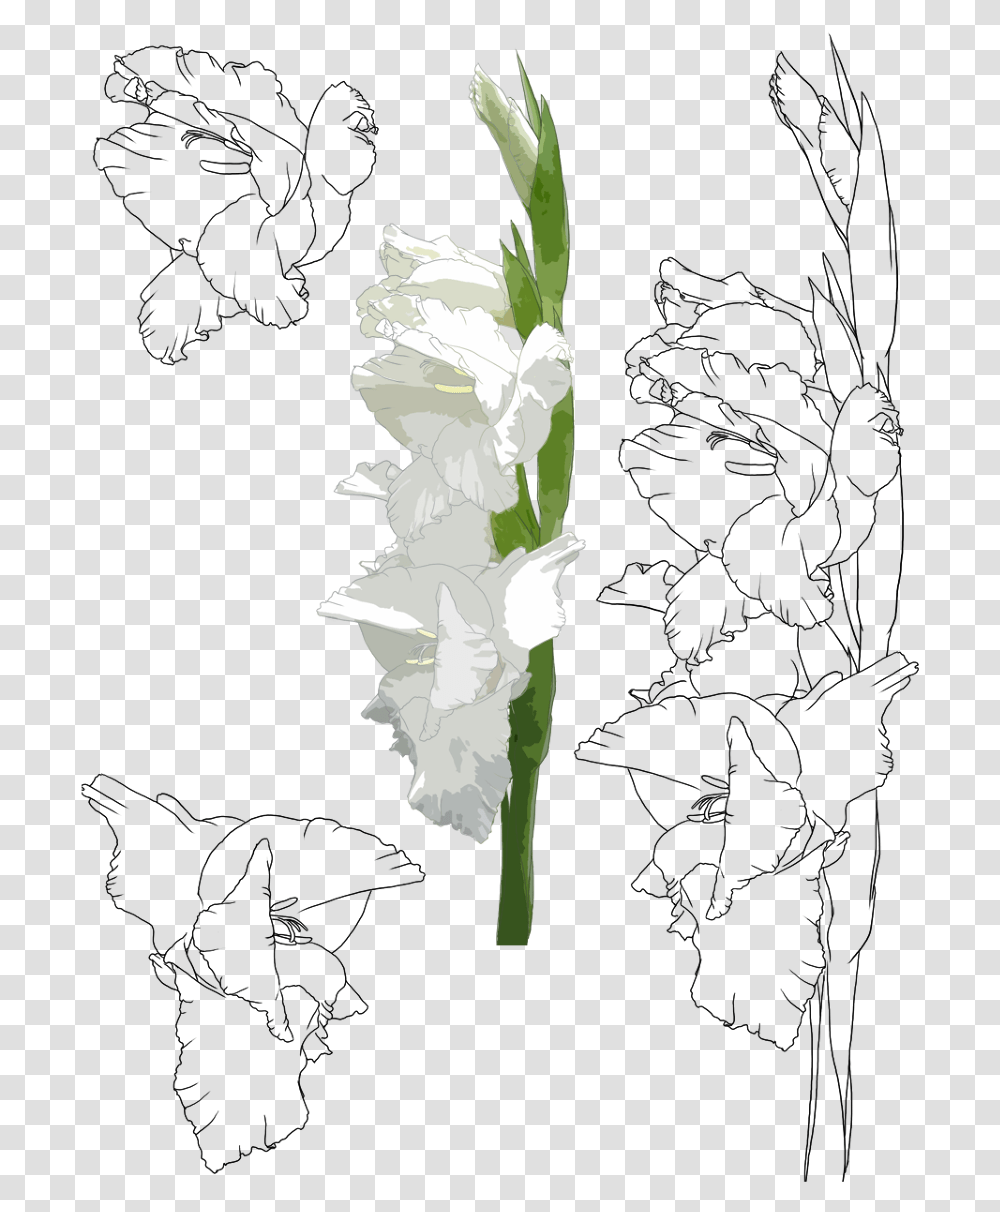 Gladiolus Cch V Hoa Lay N, Plant, Flower, Blossom, Carnation Transparent Png